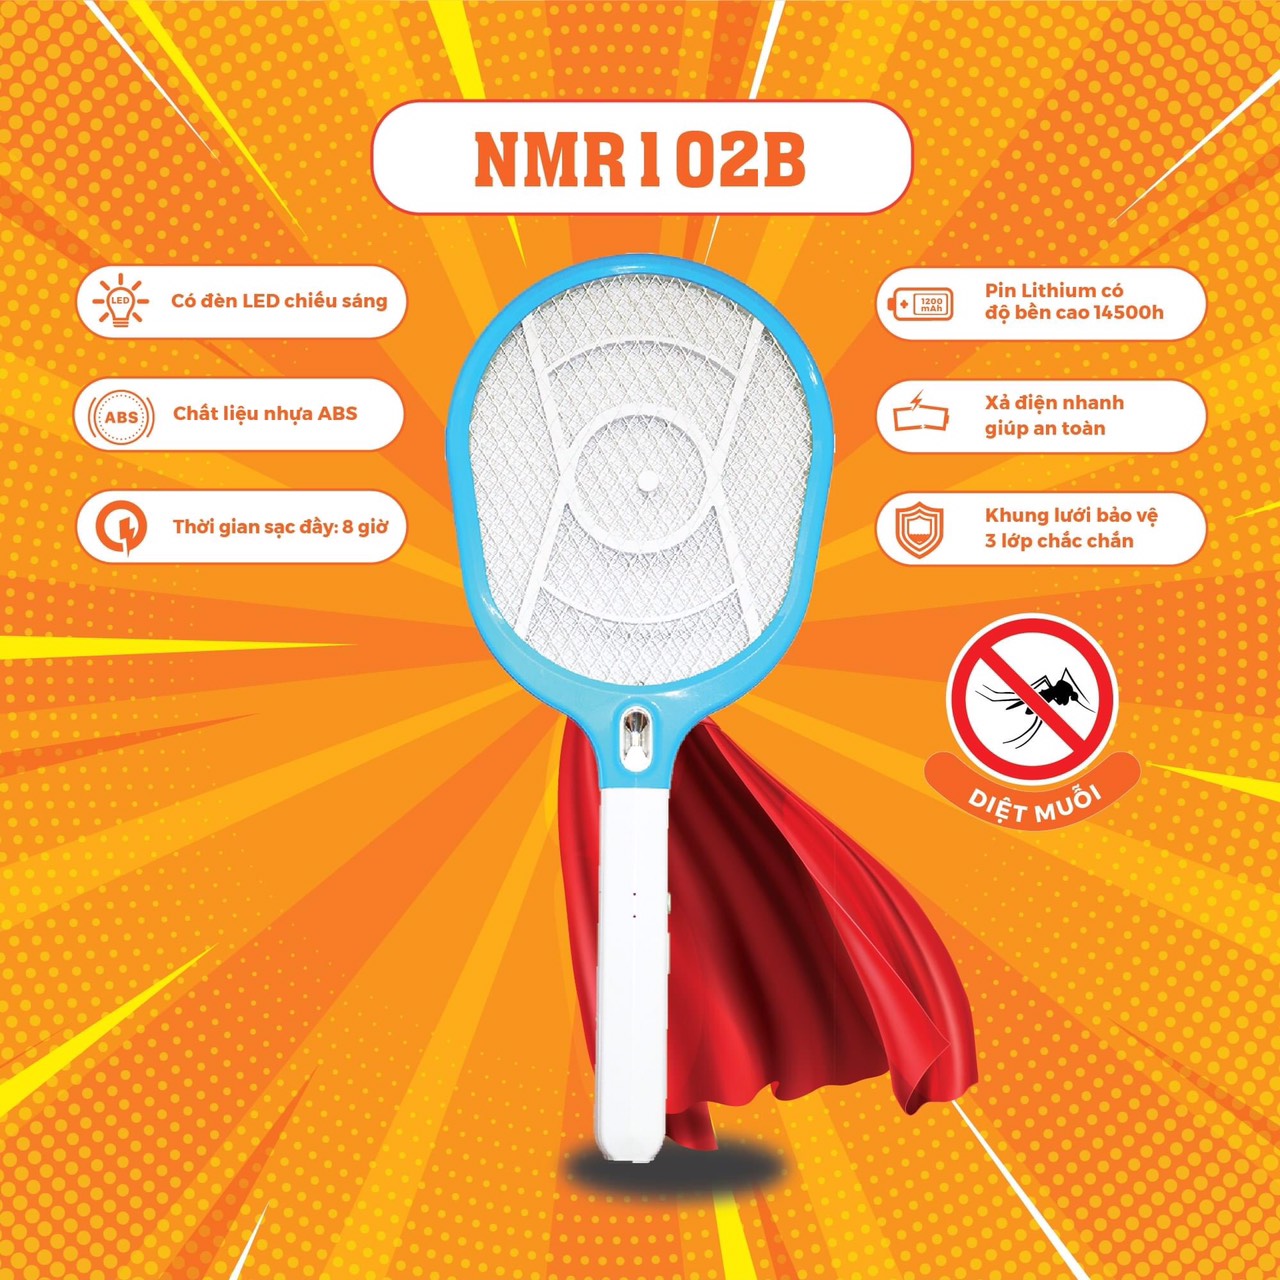 Vợt Muỗi Nanoco NMR102 khung lưới 3 lớp, đèn led chiếu sáng, nhựa ABS